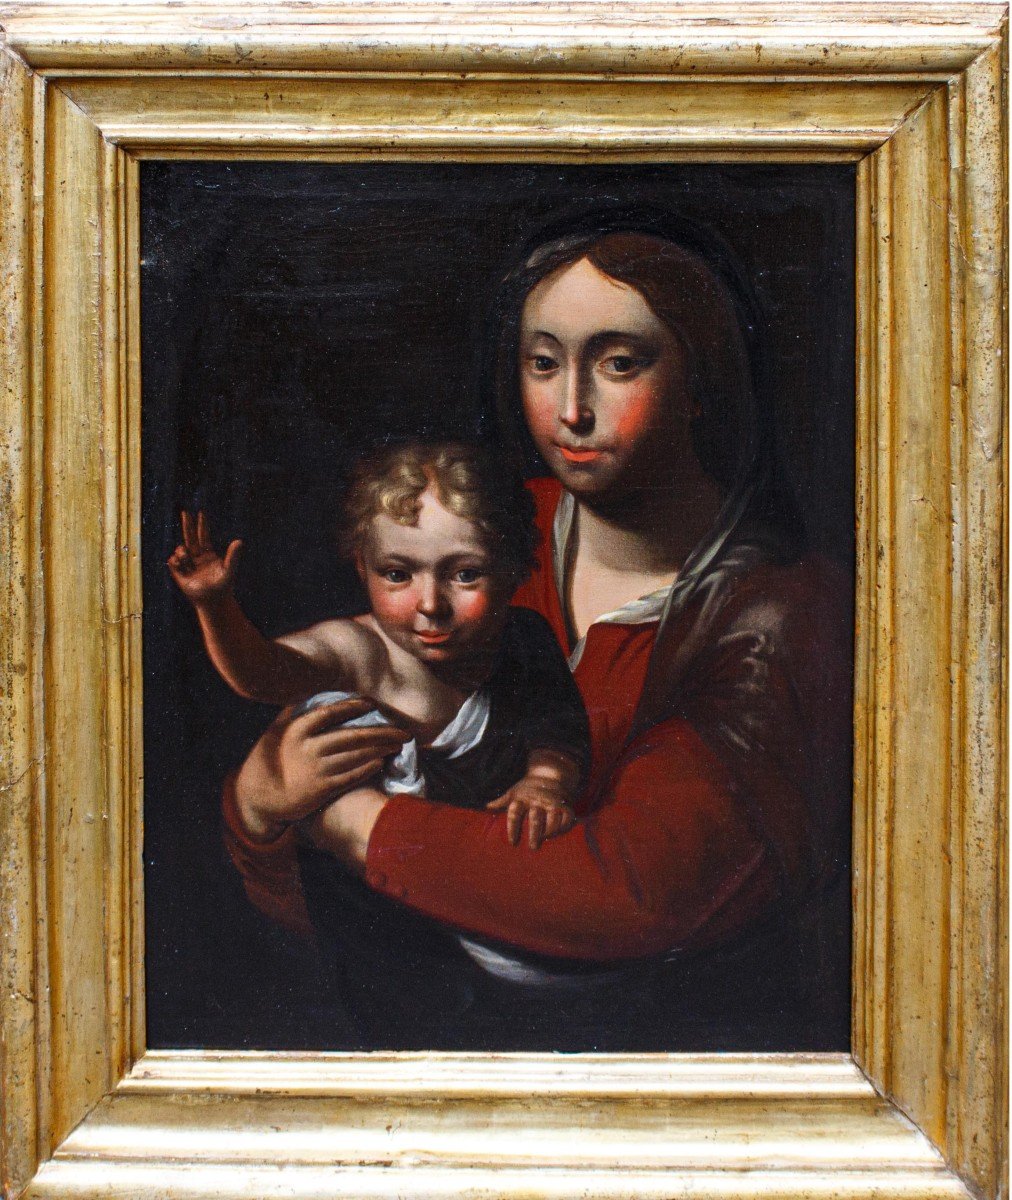 XVII secolo, Scuola bergamasca, Madonna con Bambino benedicente